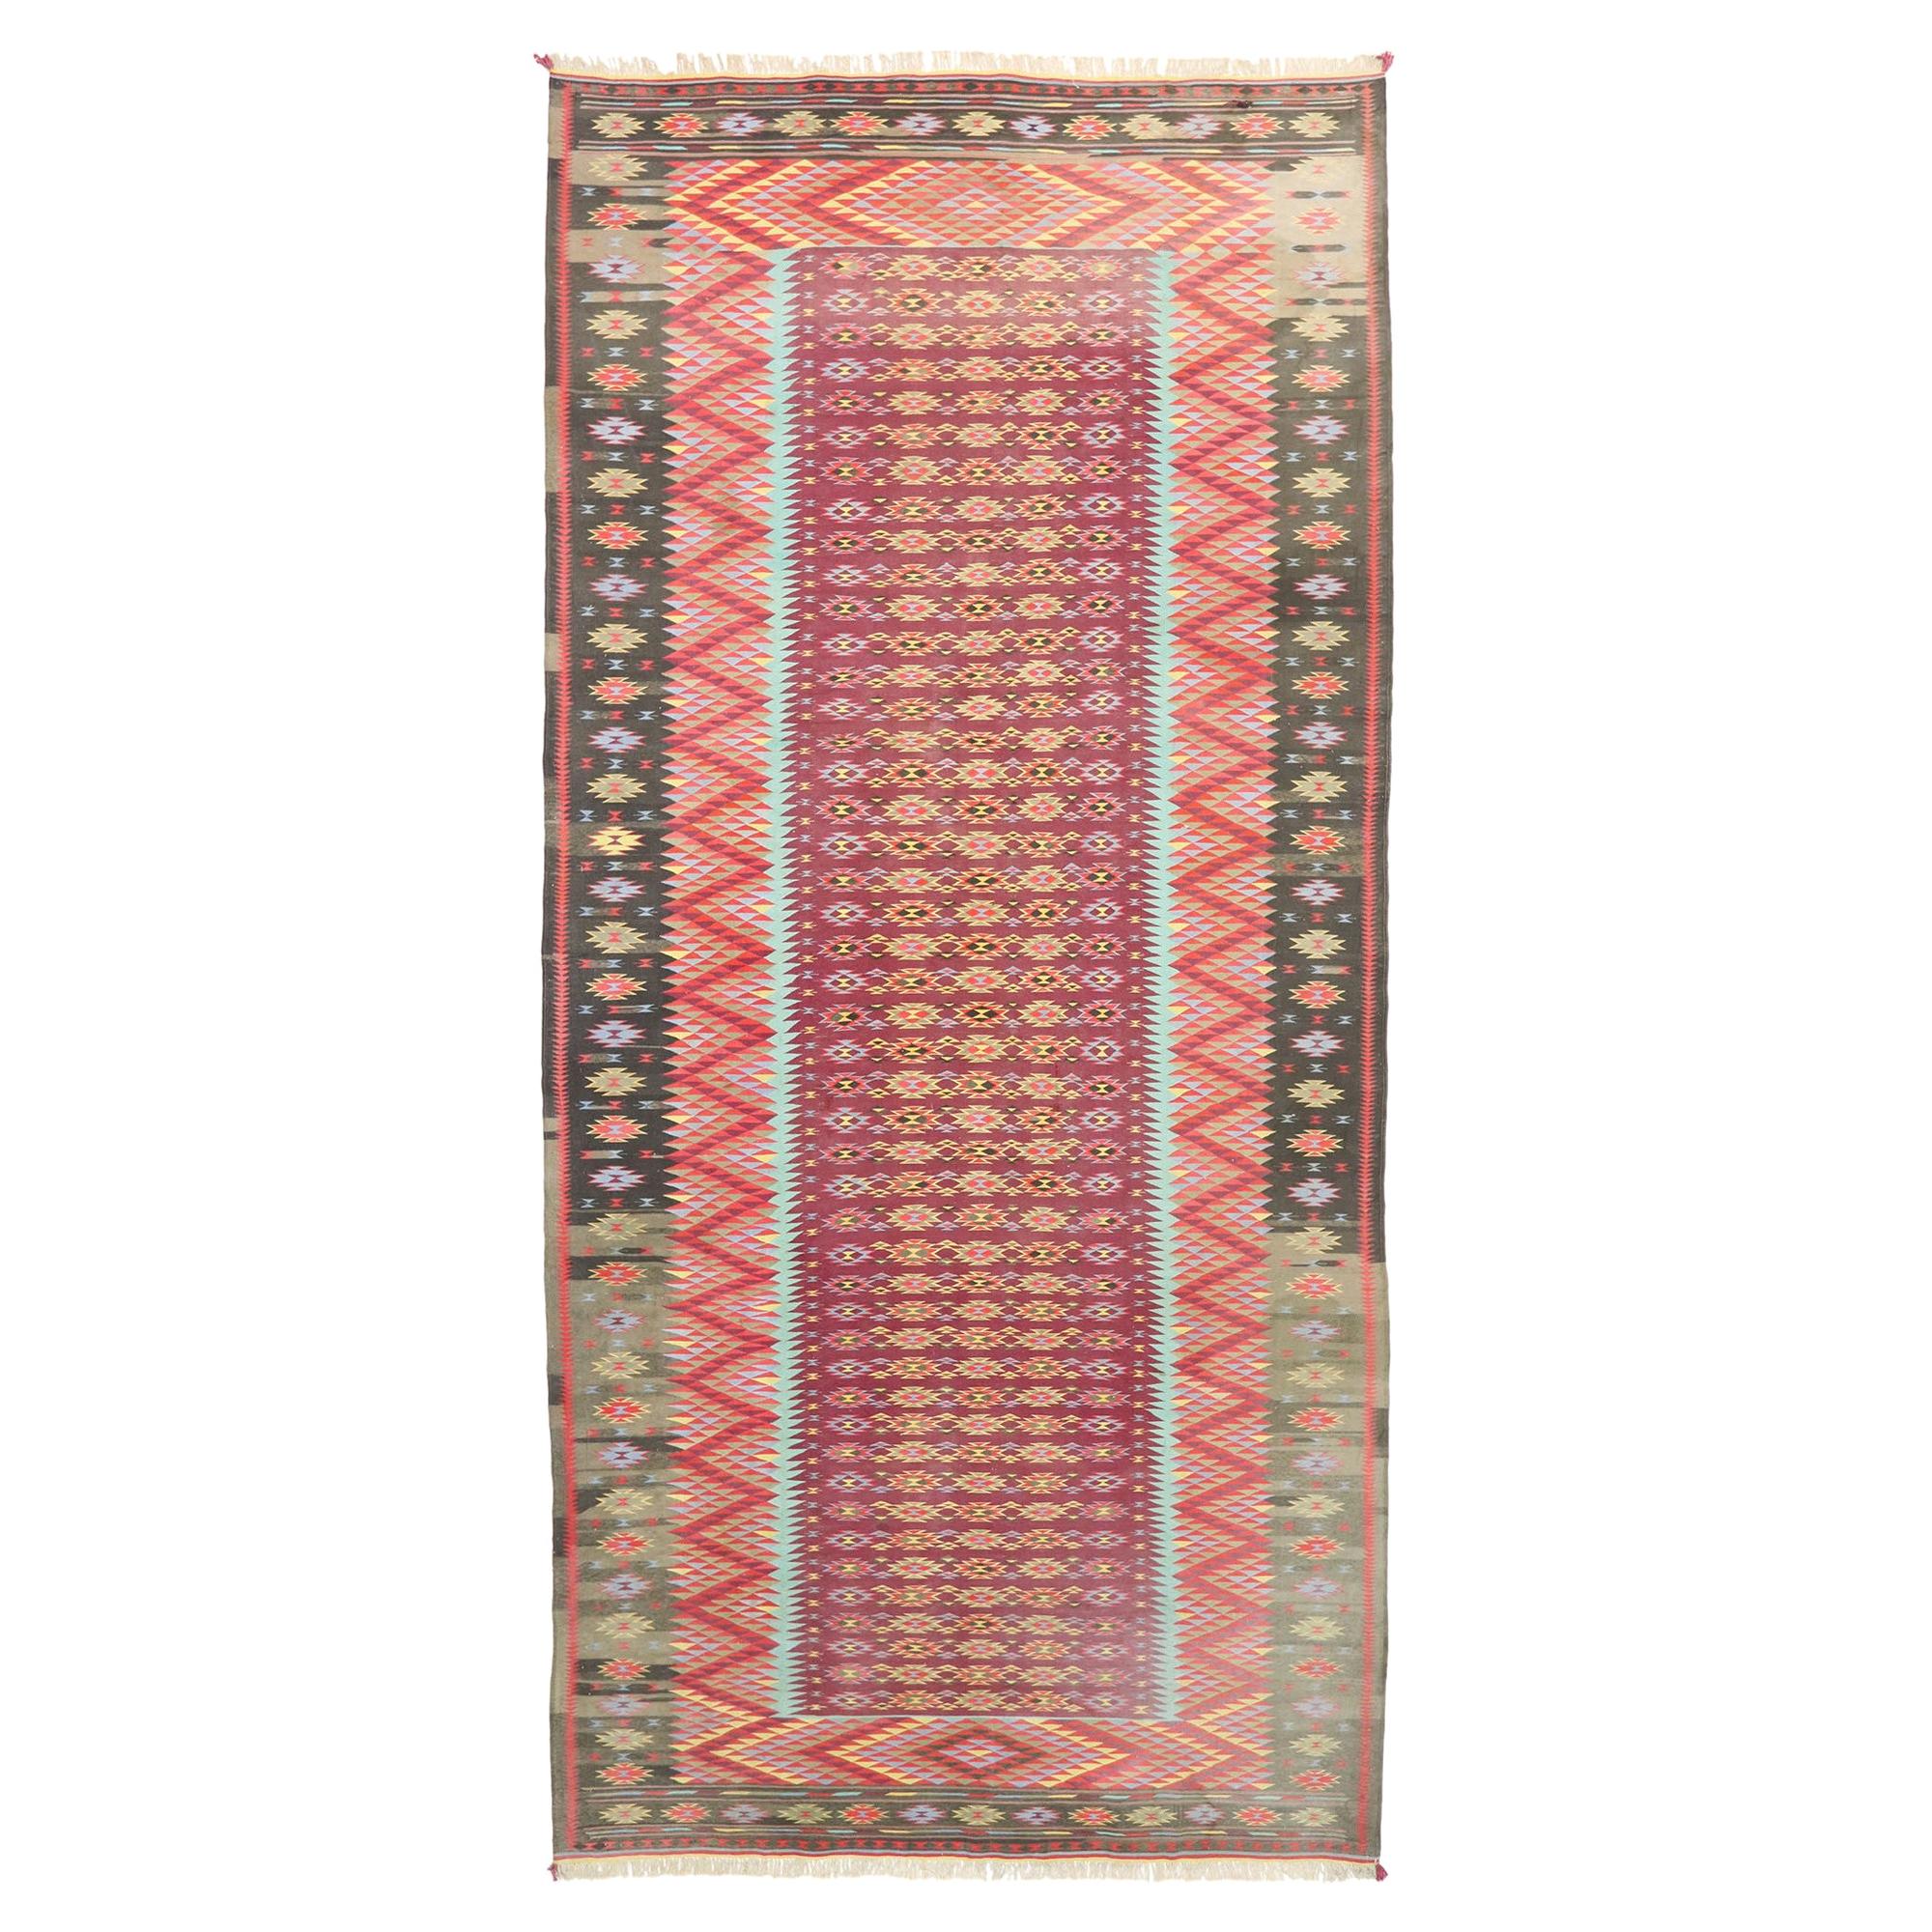 Indischer flachgewebter Dhurrie-Kelim-Teppich in Zimmergröße im Südwesten-Stil, indischer Stil